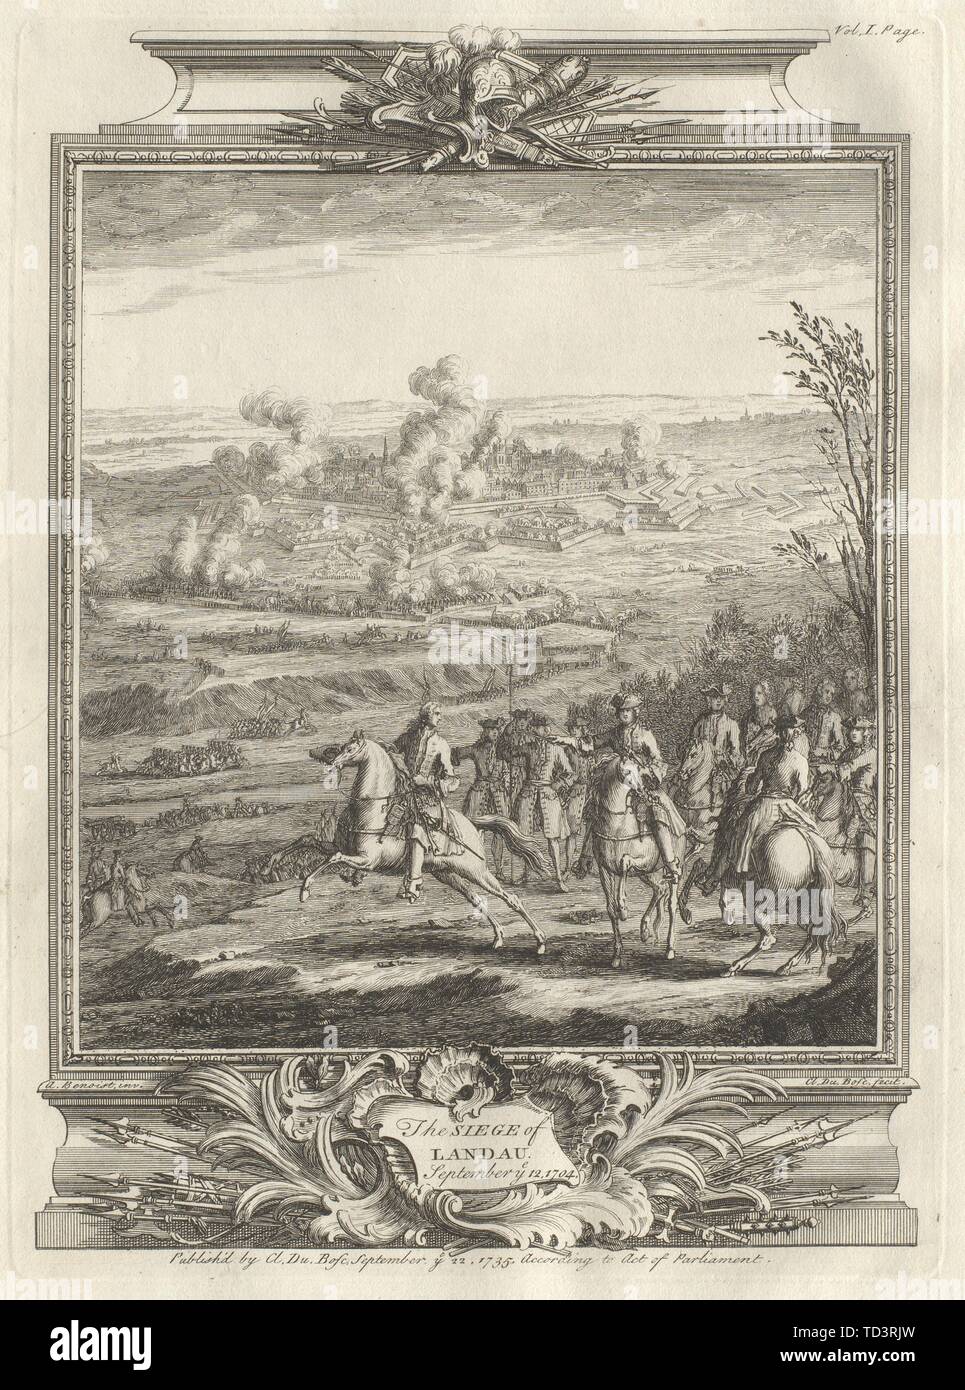 L'Assedio di Landau settembre voi 12, 1704. Renania-palatinato 1736 antica stampa Foto Stock